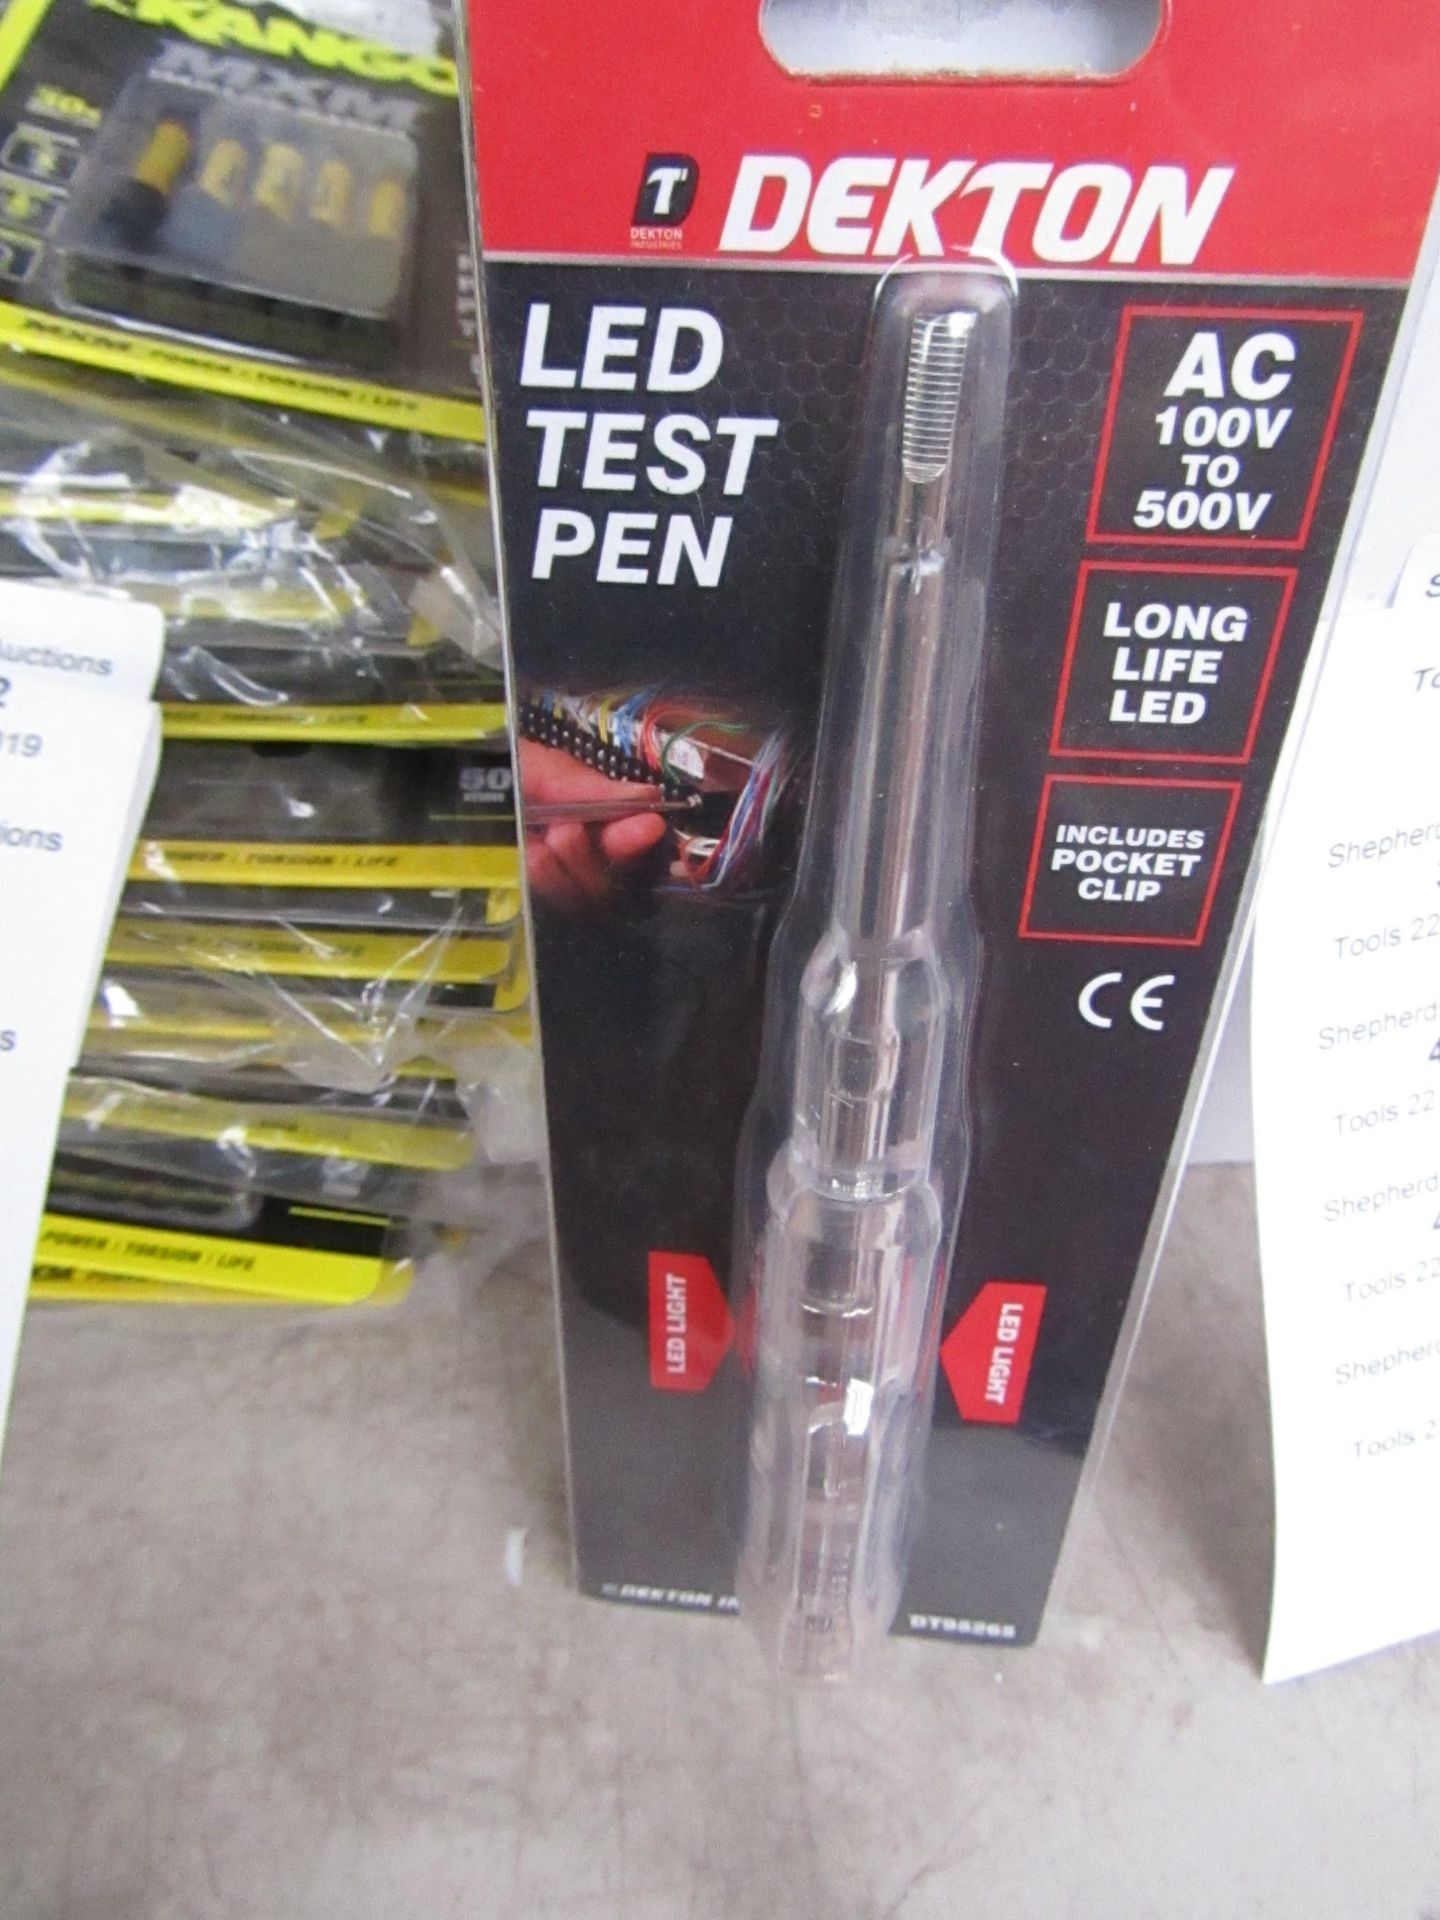 Dekton LED test pen , new in packaging